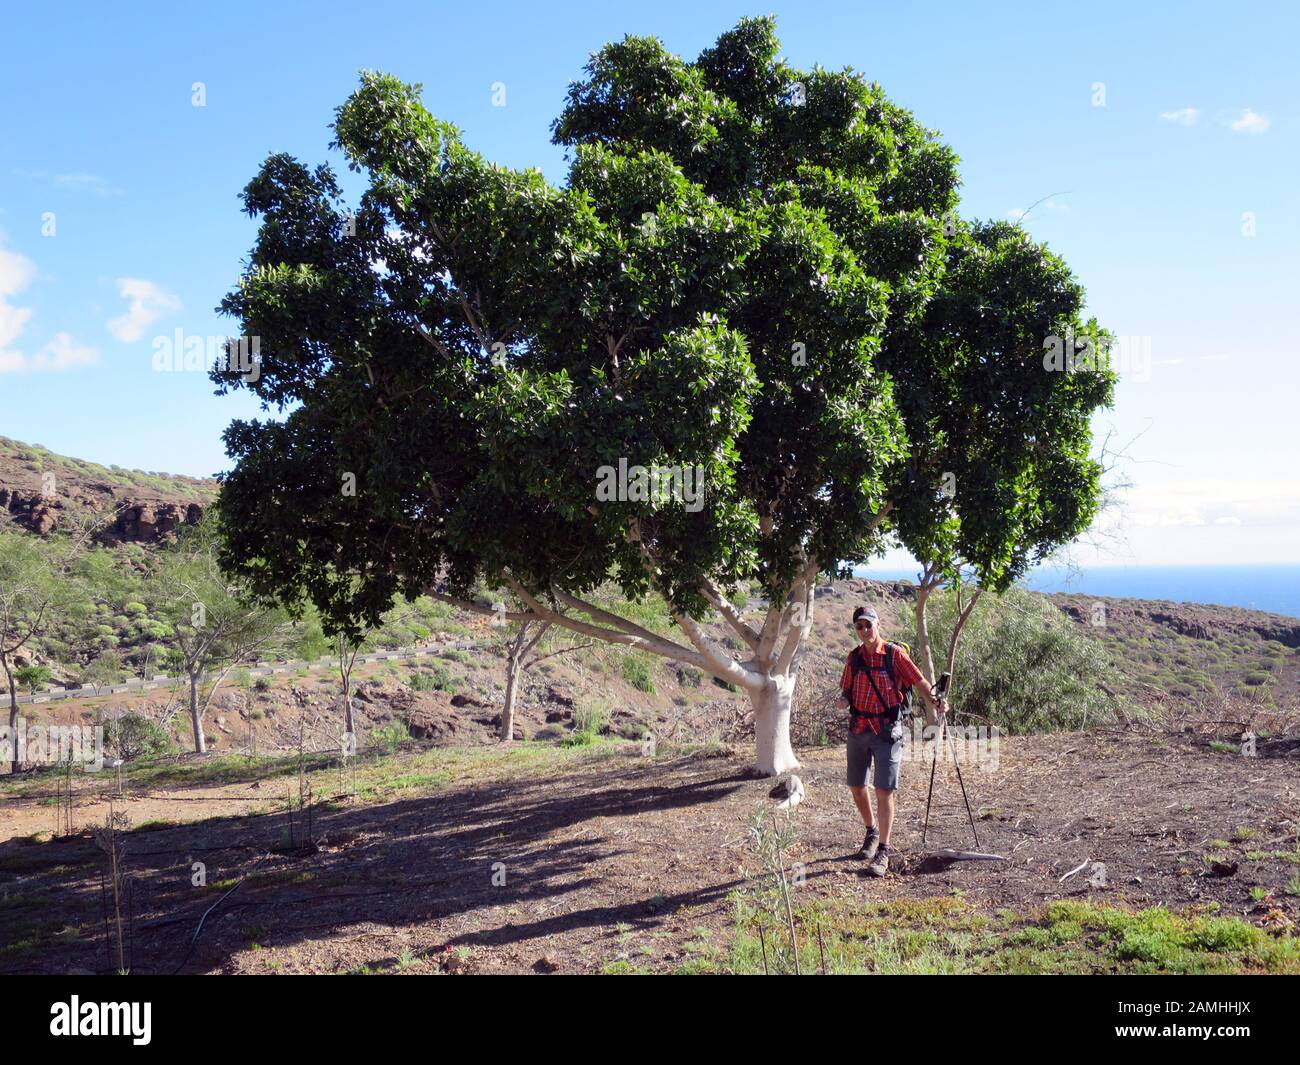 Echter Lorbeer, Gewürzlorbeer (Laurus nobilis) - Wanderung von Puerto de Mogan auf den Lomo de Tabaibales, Puerto de Mogan, Gran Canaria, Kanaren, Spa Foto Stock